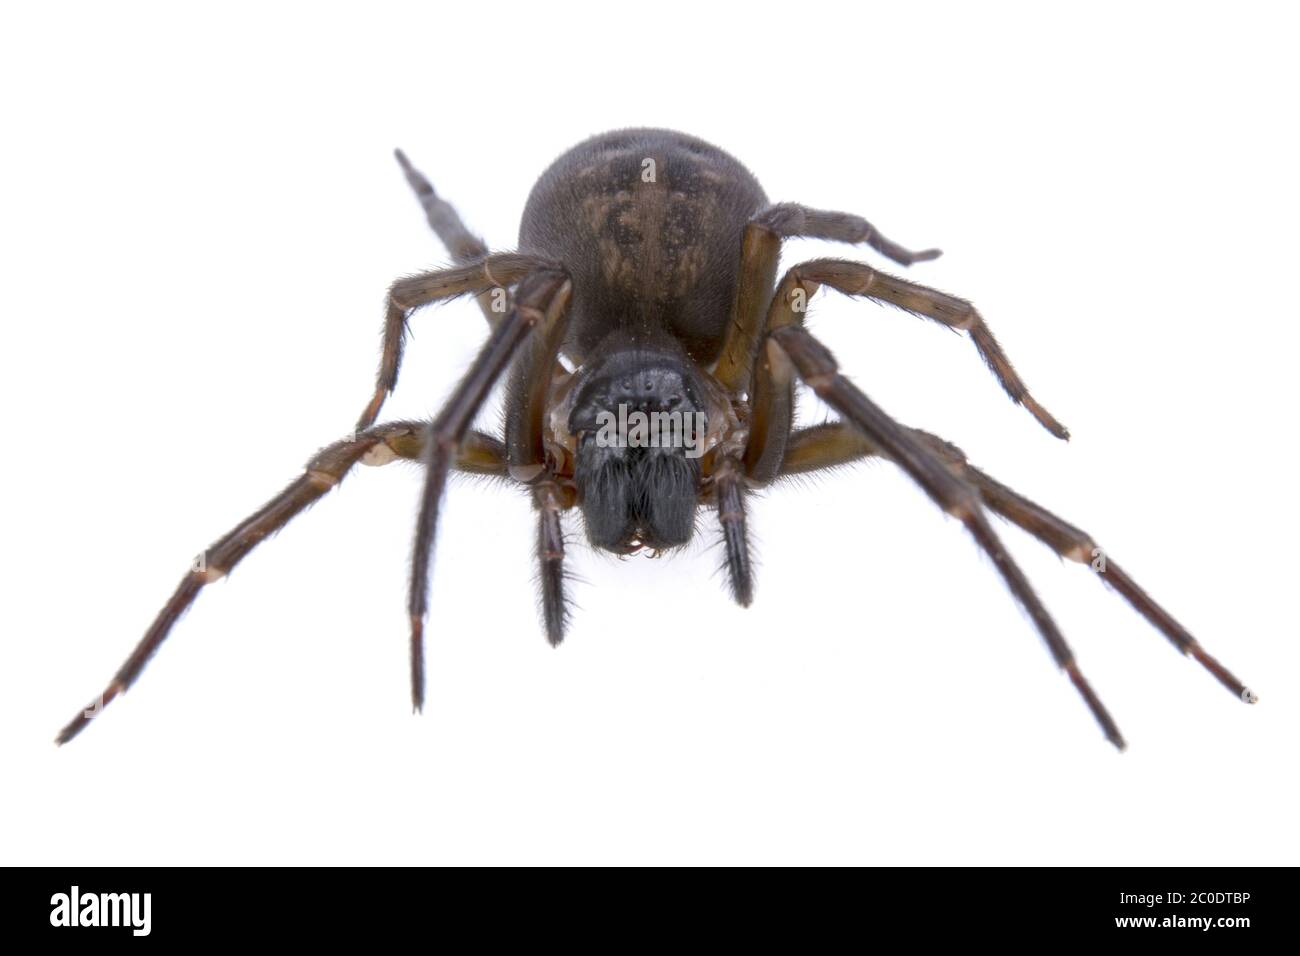 Dark brown spider on a white background Stock Photo